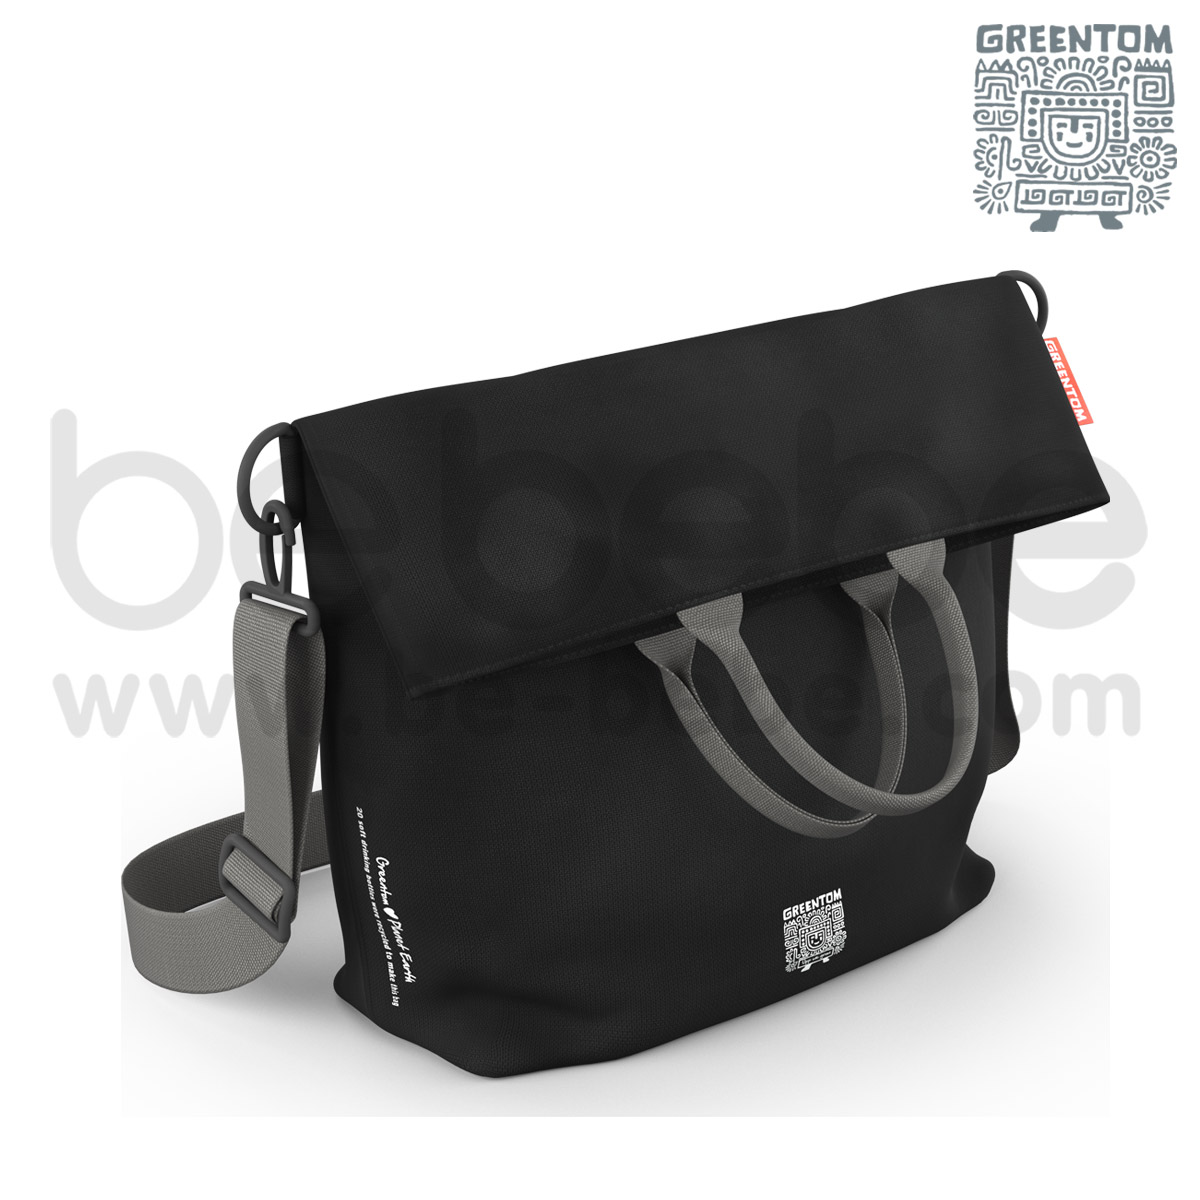 Greentom : Diaper Bag / Black